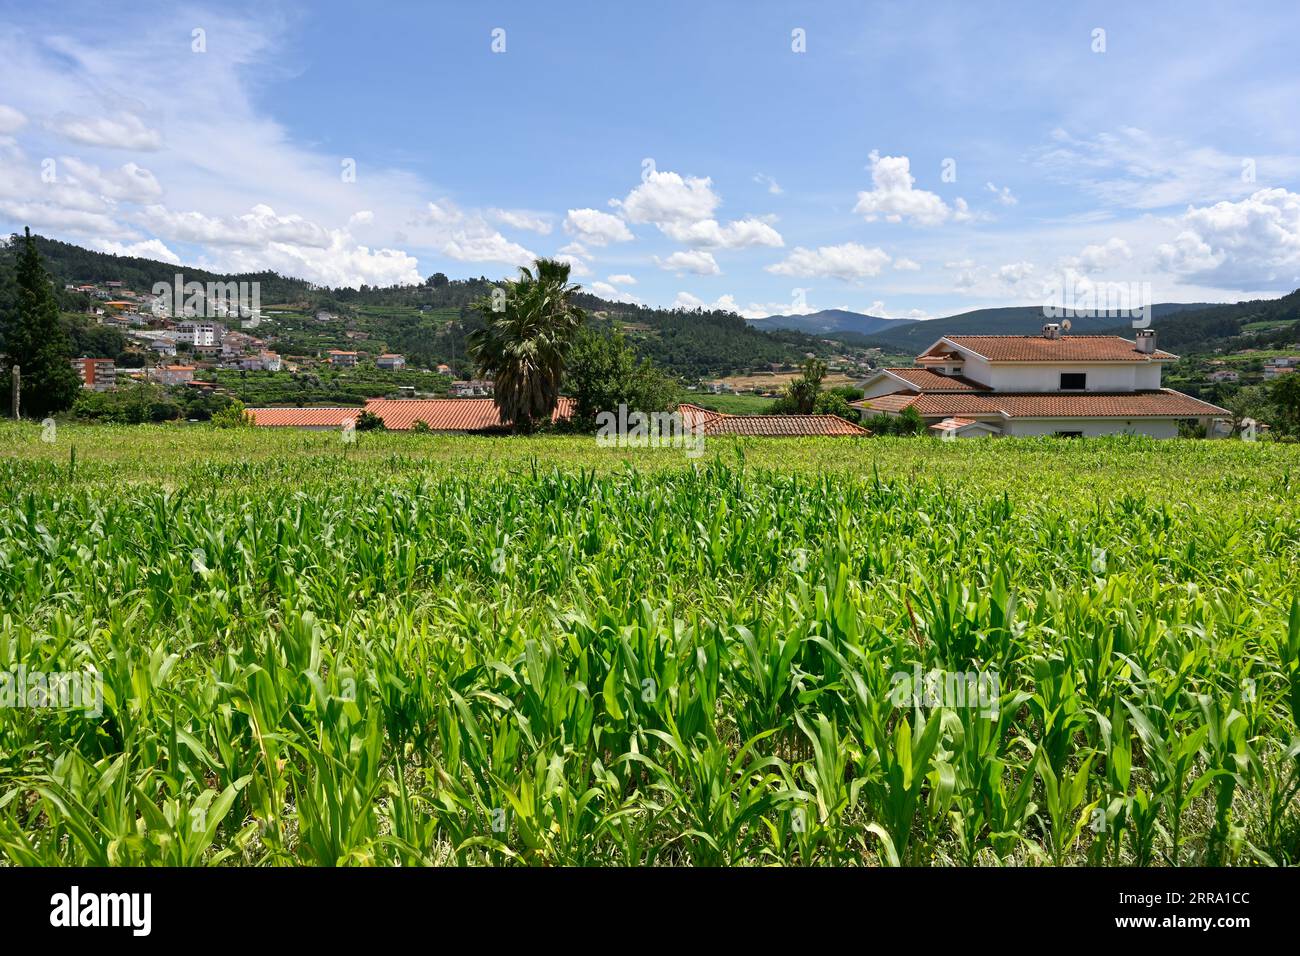 Maze plantes poussant dans le champ avec ferme avec vue sur les montagnes du district, nord du Portugal Banque D'Images